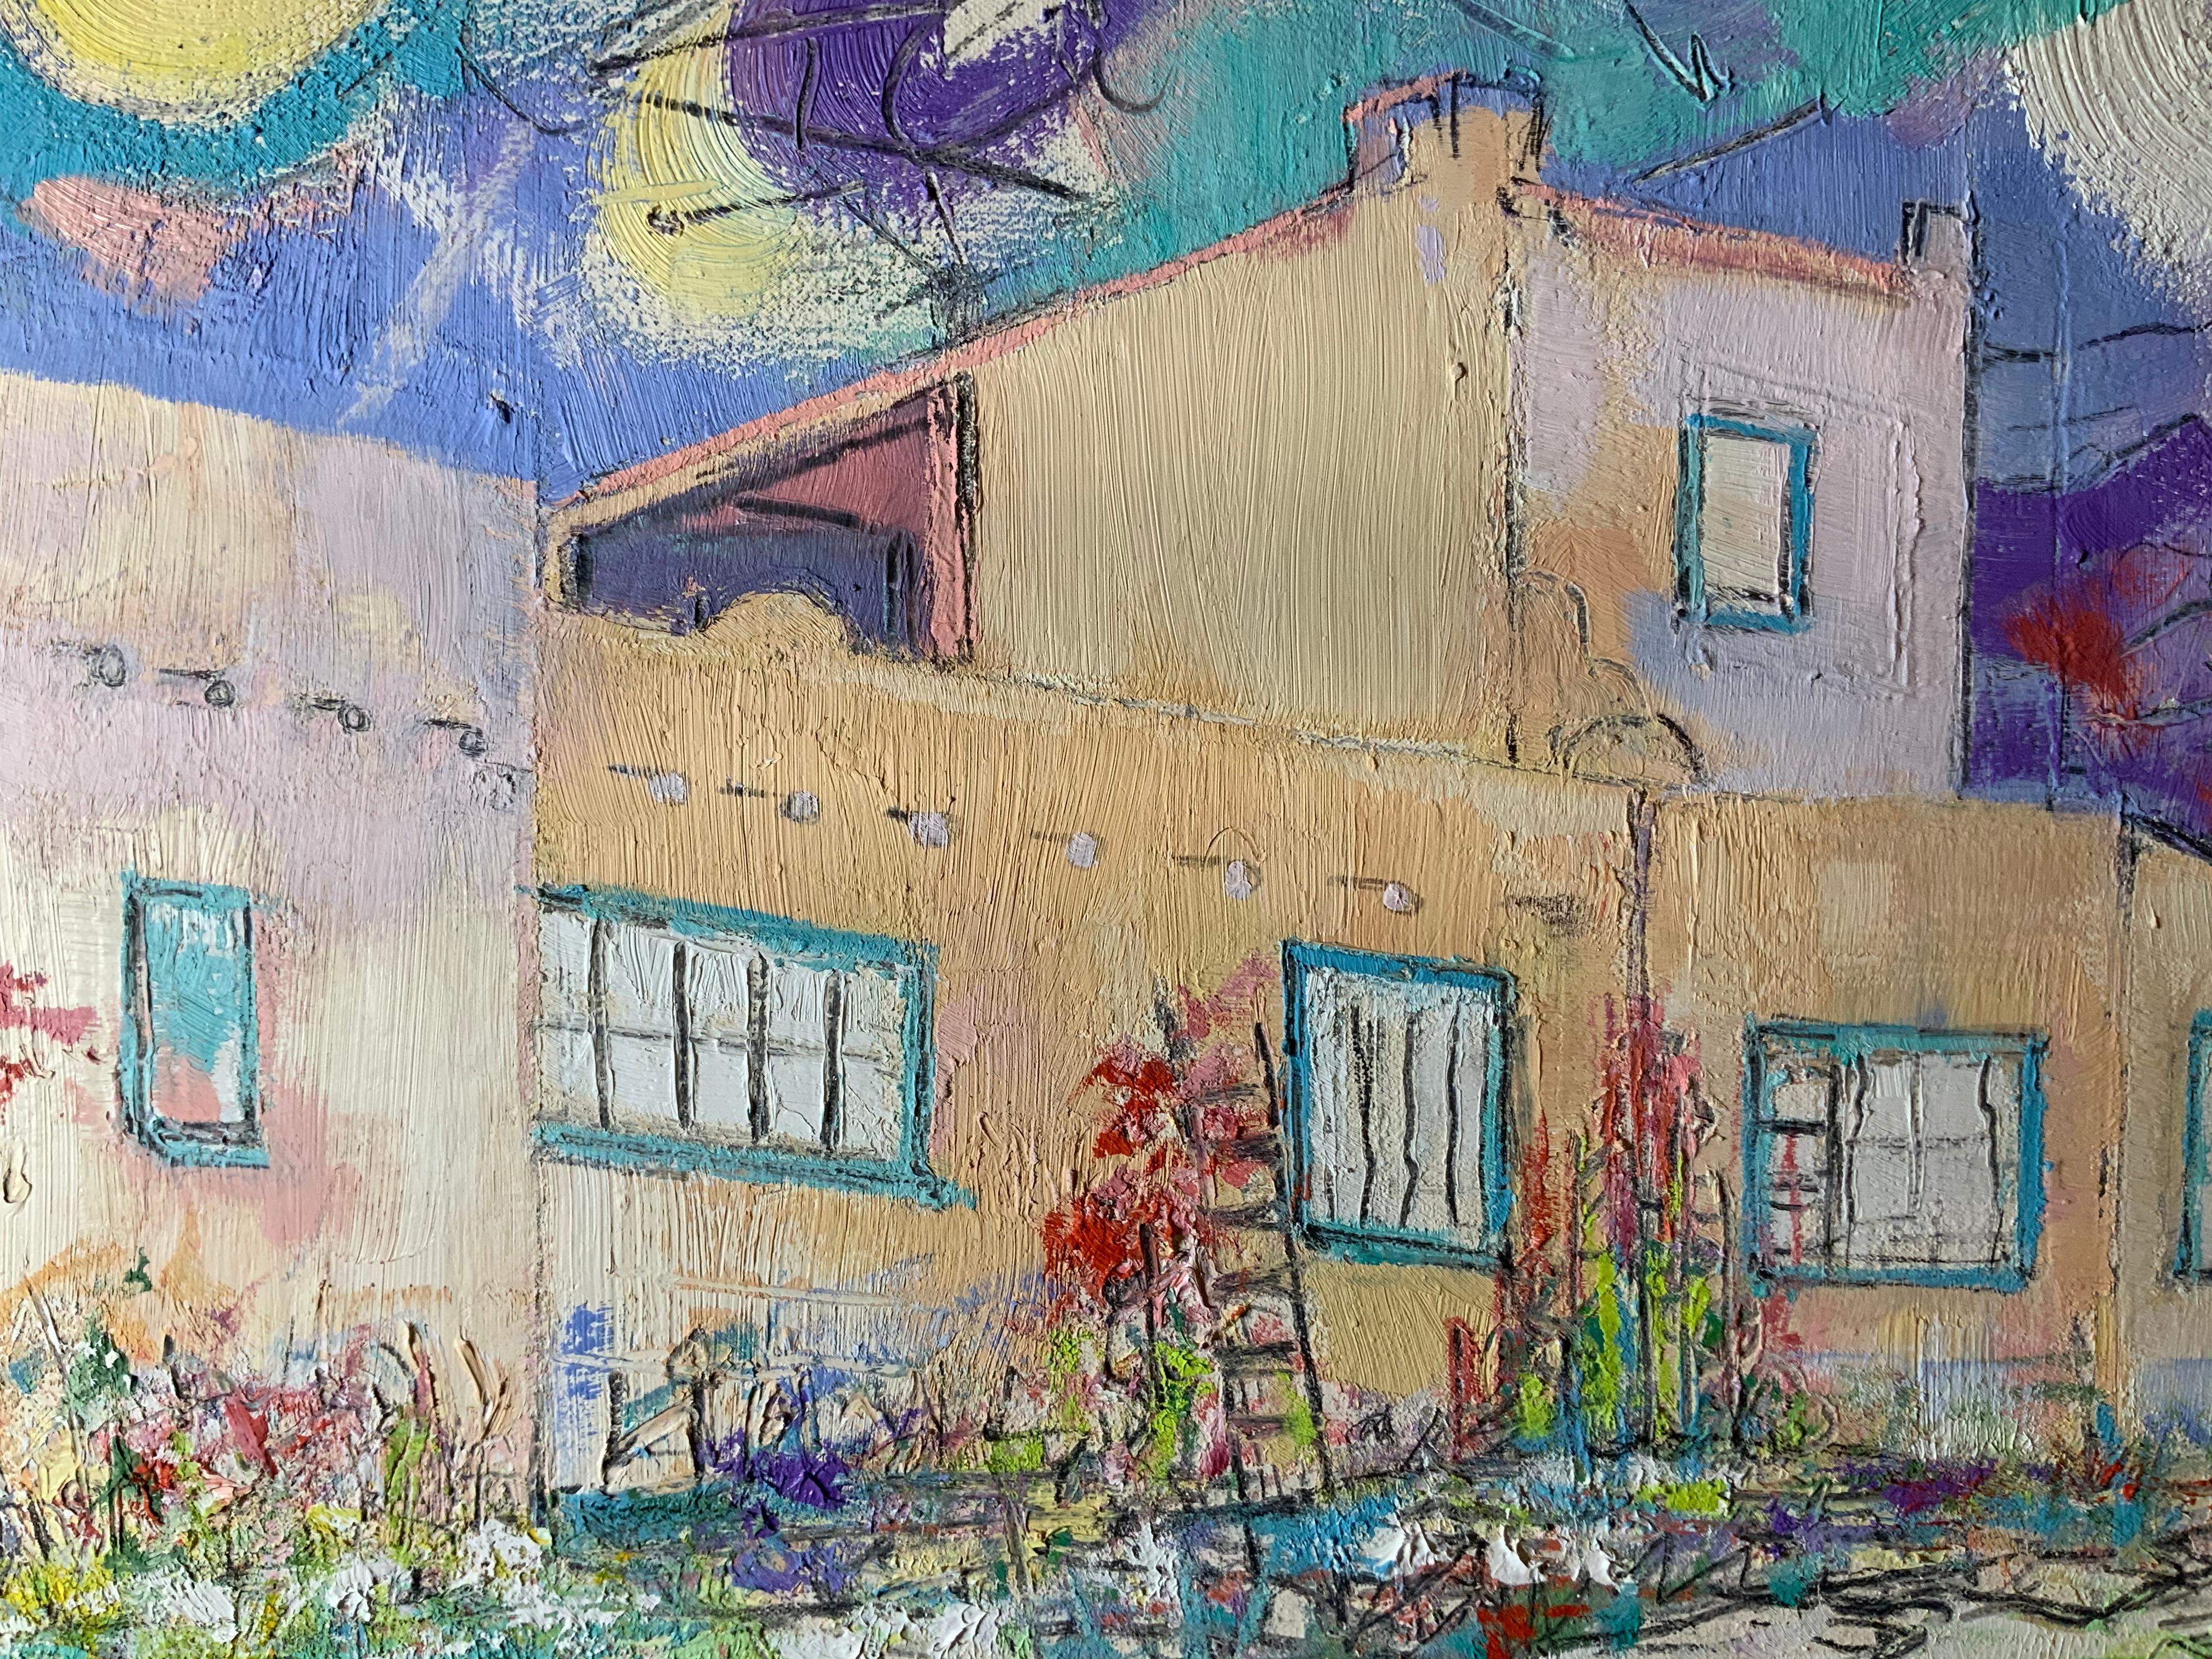 Laurie Hill Phelps ist seit 37 Jahren als Malerin in Taos New Mexico tätig. Ihre Aquarelle und Ölgemälde zeigen die farbenfrohen Bilder des nördlichen New Mexico. Lauries Bilder haben ein Eigenleben. Ihre Arbeiten befinden sich in mehreren Privat-